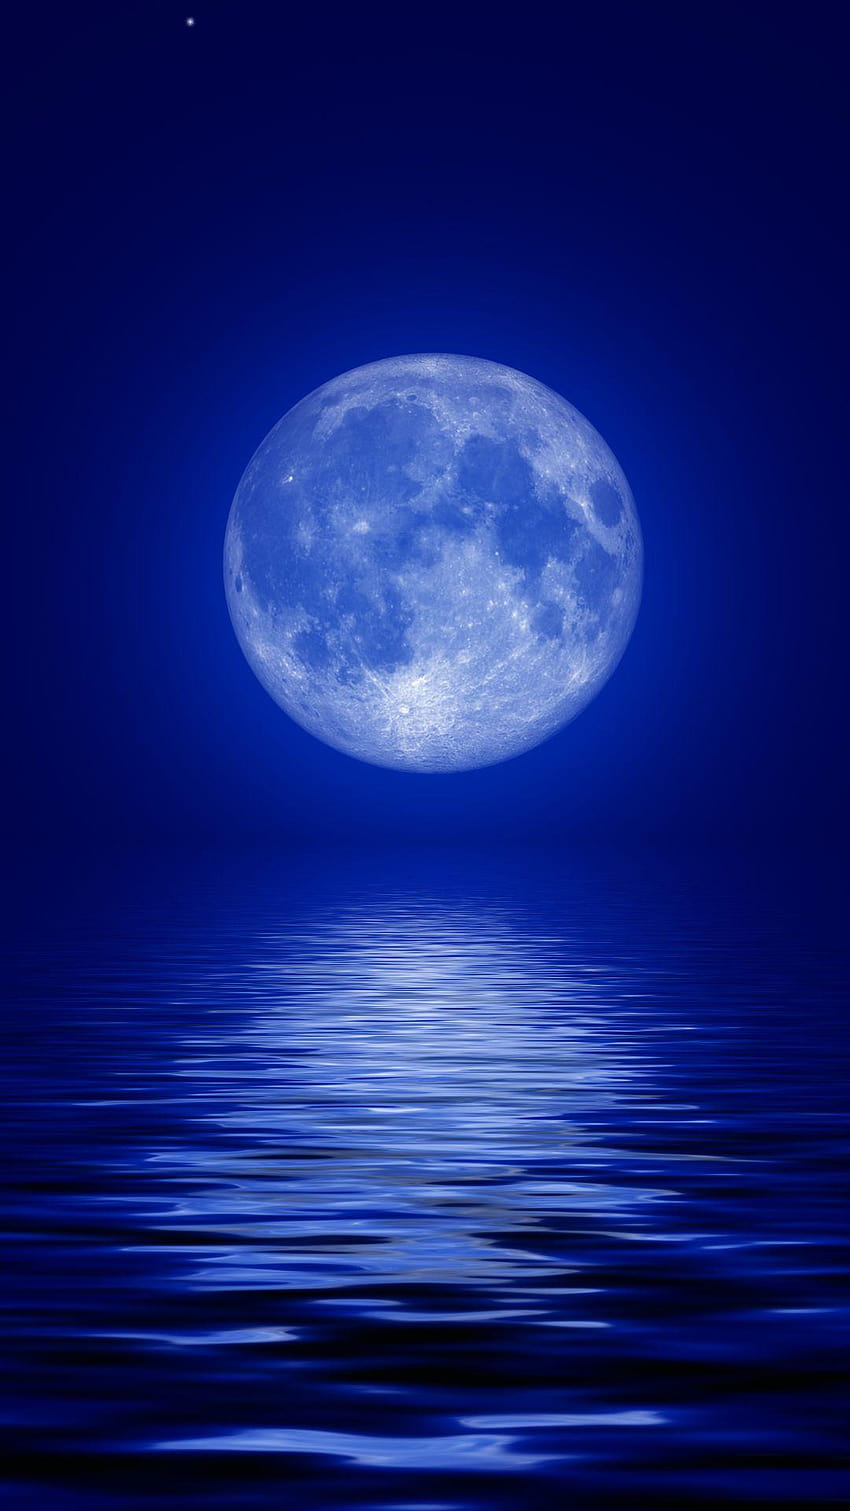 Full Moon For Mobile, blue moon for mobile HD phone wallpaper